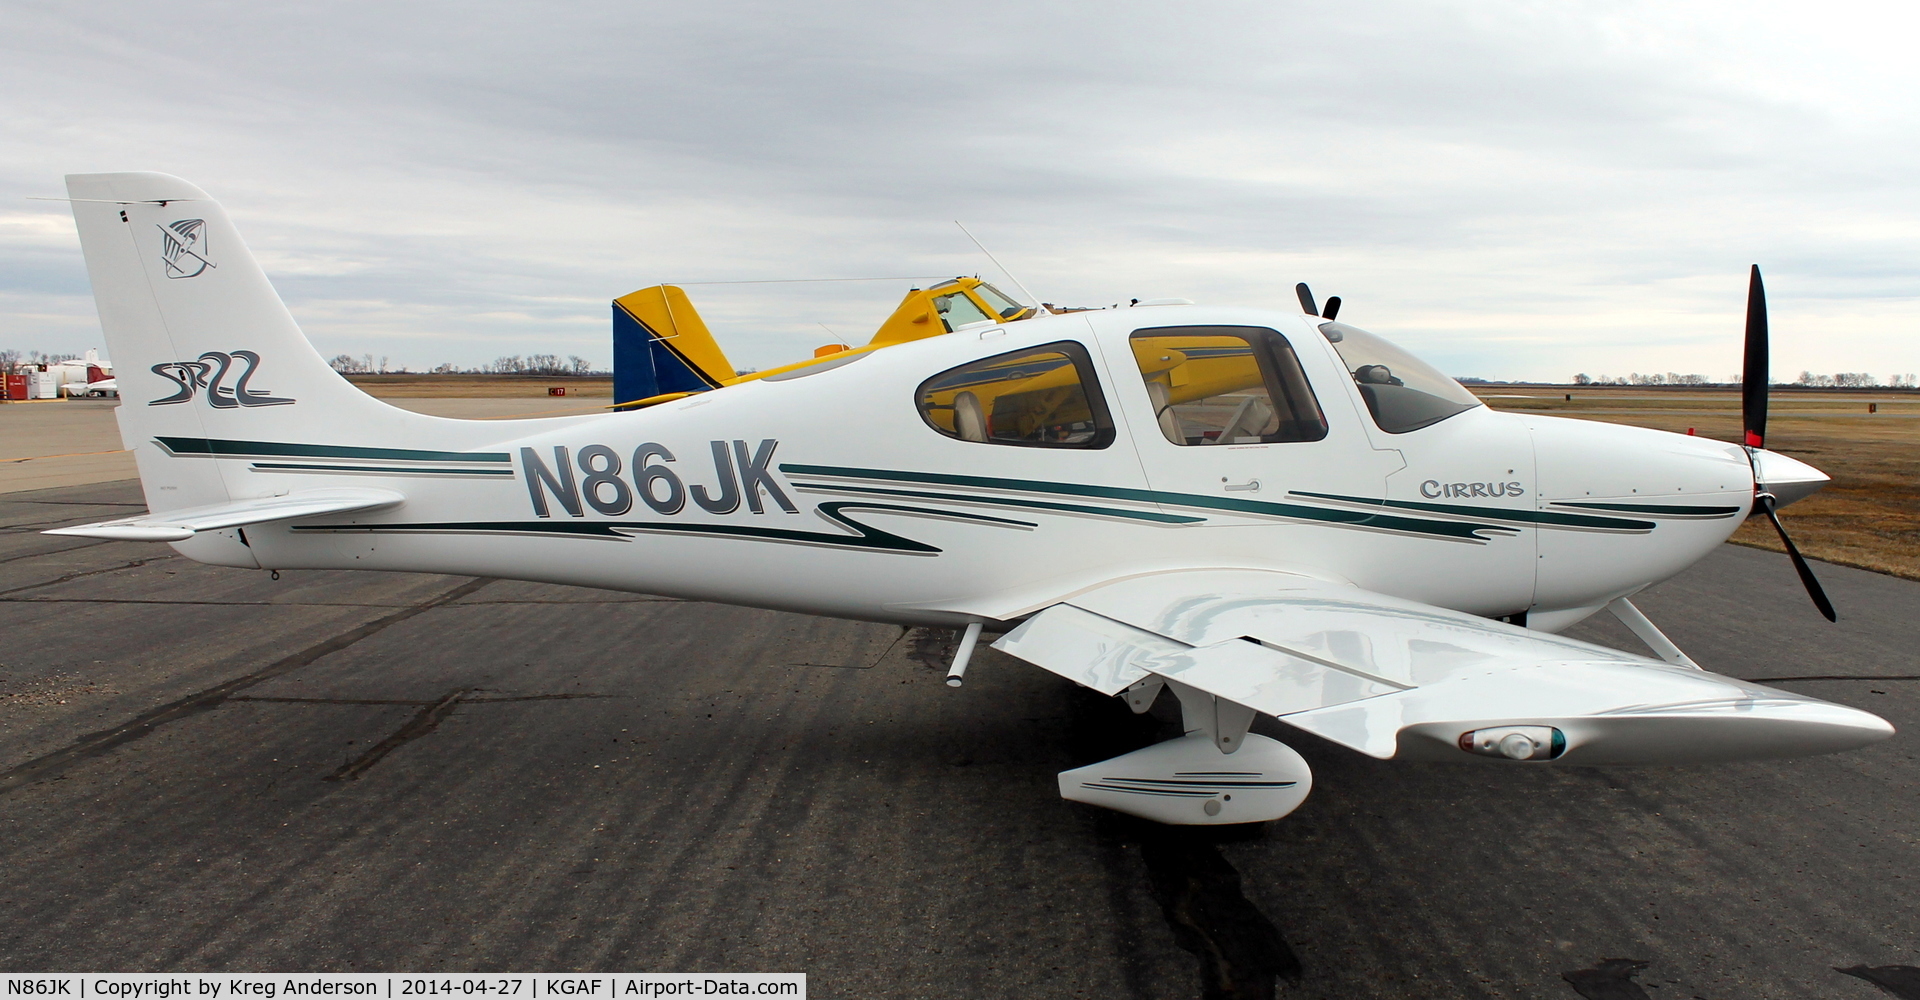 N86JK, 2003 Cirrus SR-22 C/N 0525, EAA Chapter 380 Fly-in in Grafton, ND.